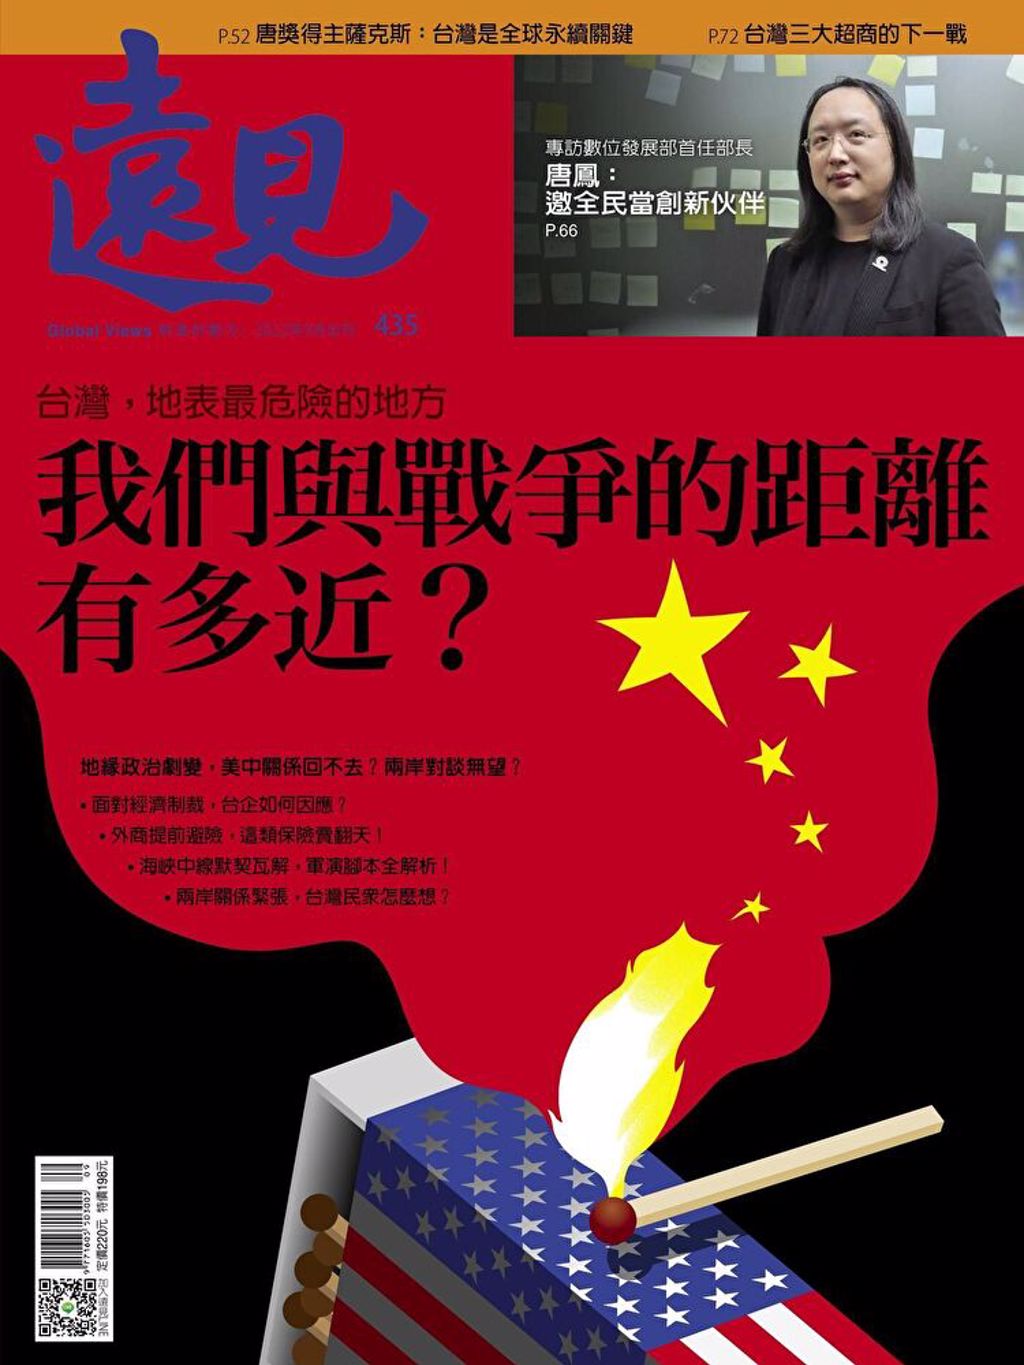 《远见杂志 9月号435期》(photo:ChinaTimes)